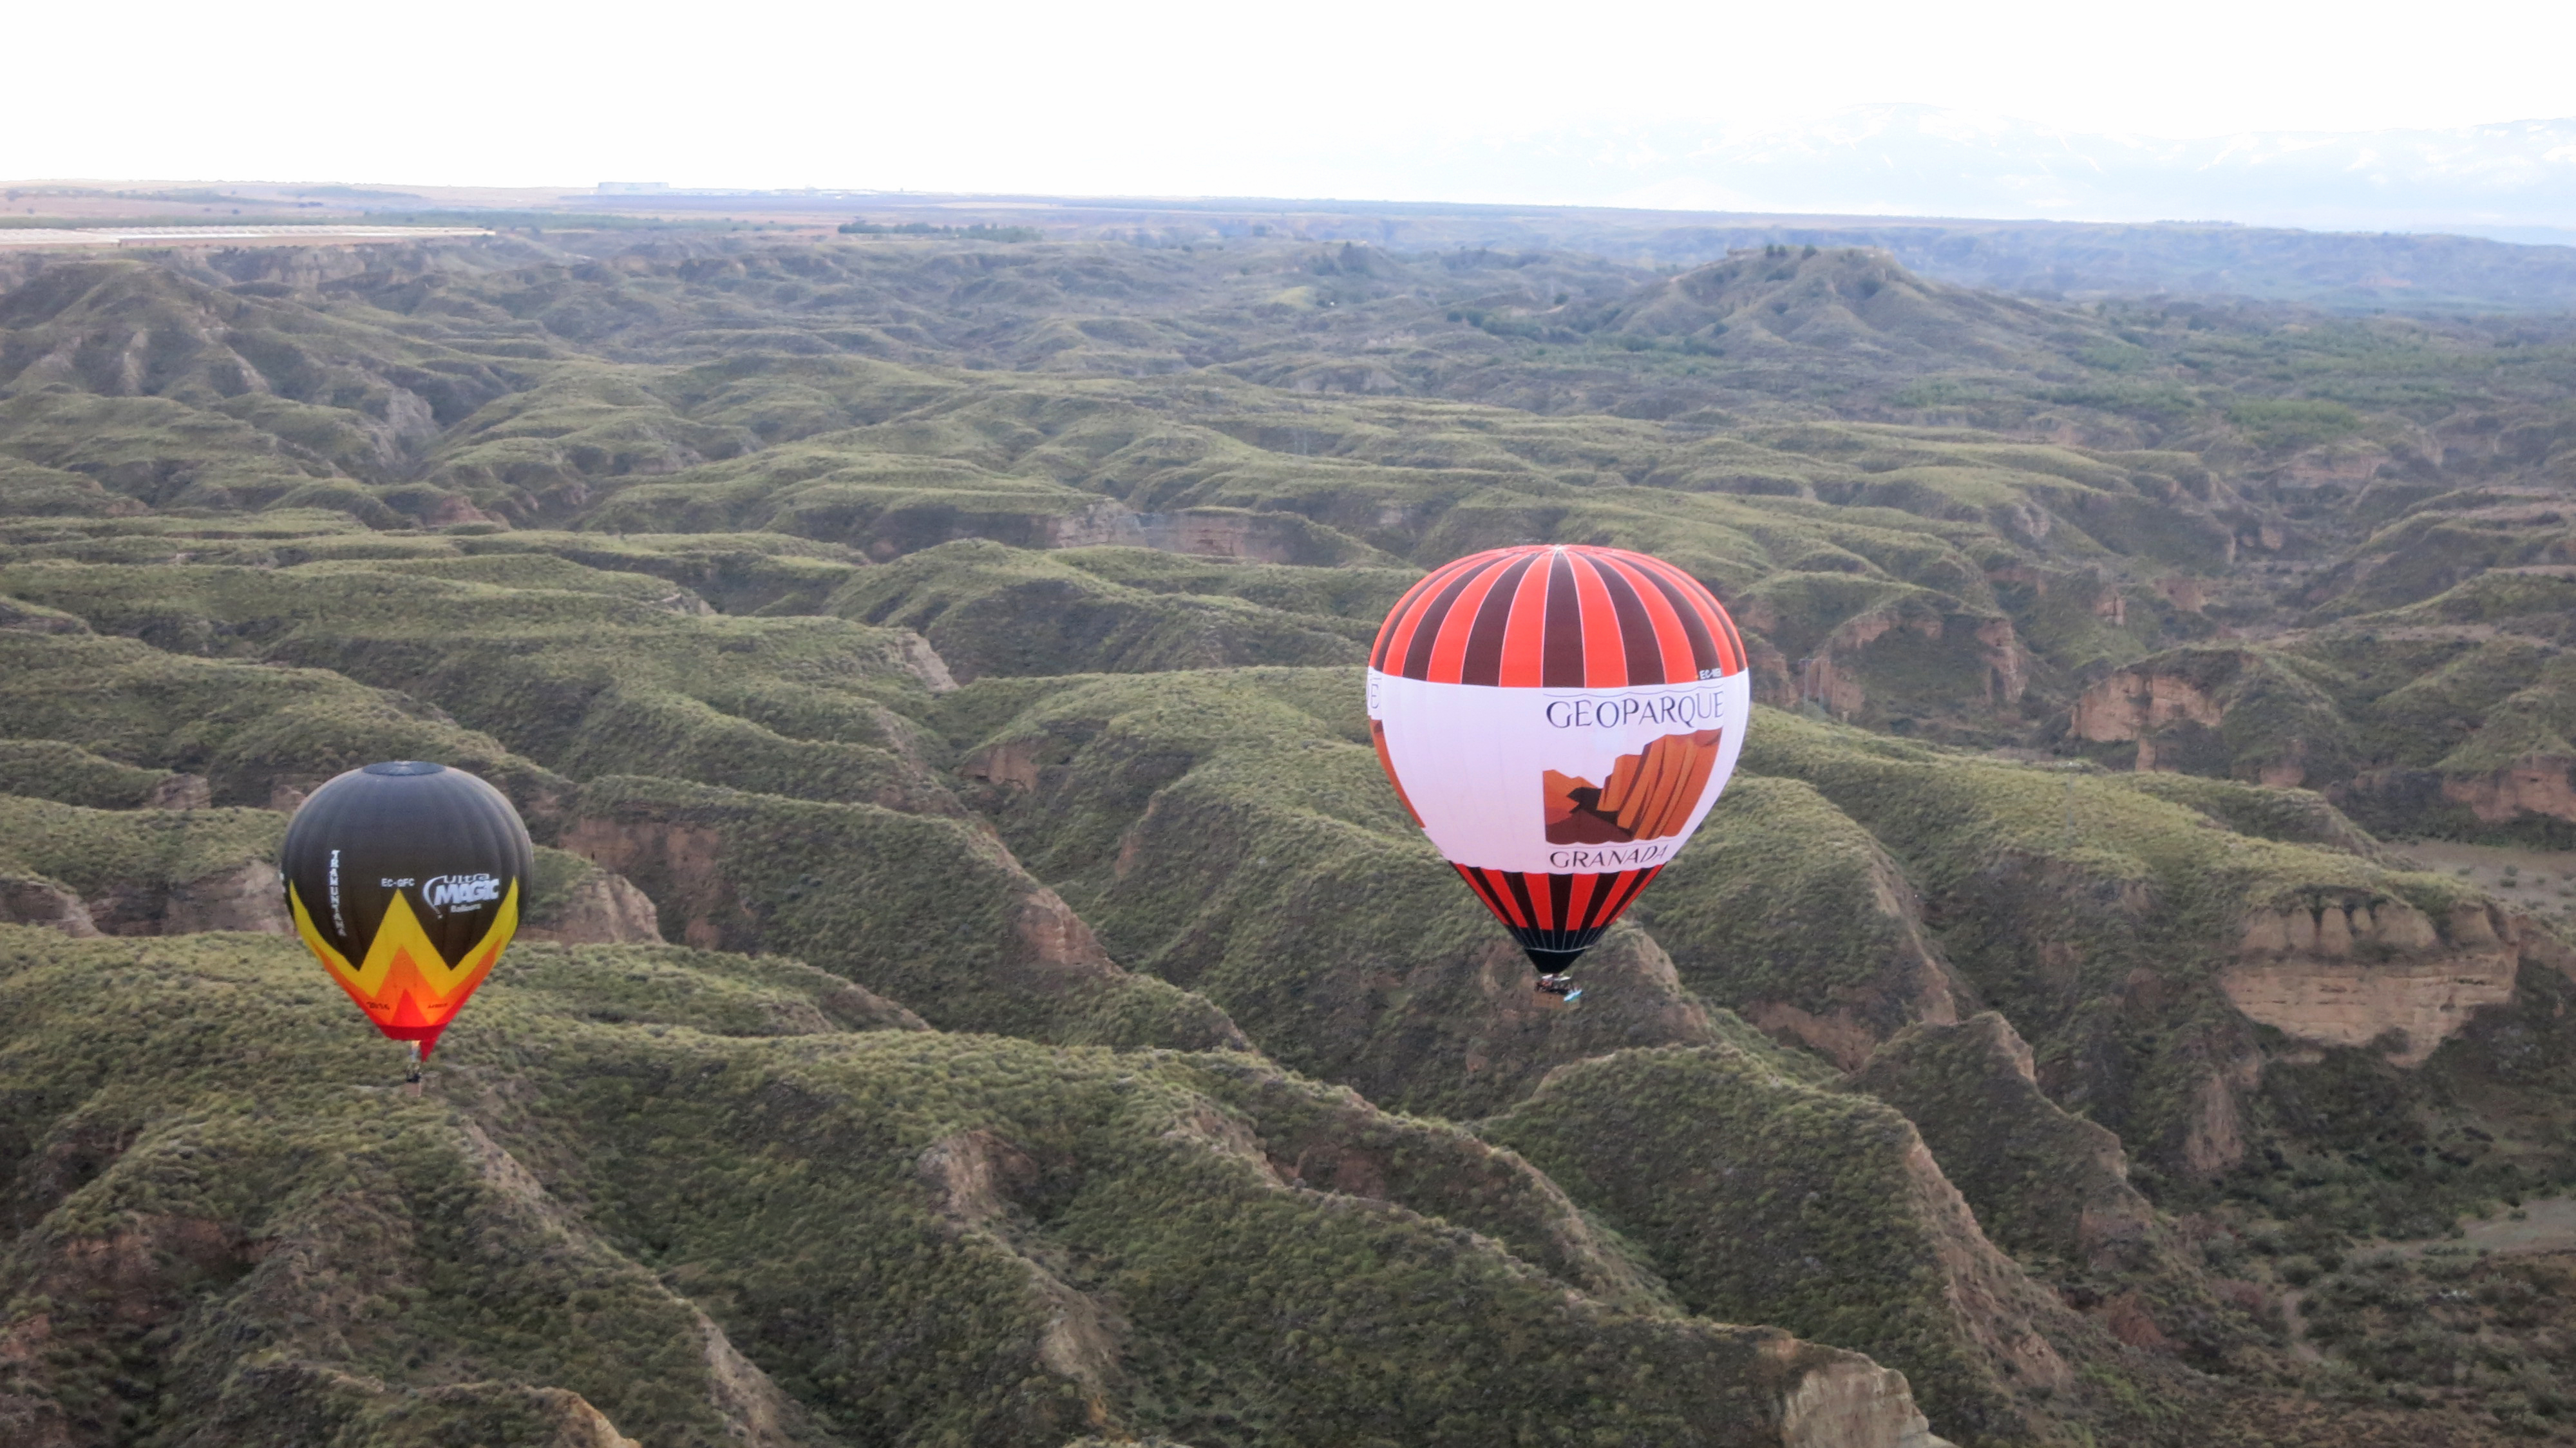 Catorce globos volarán en el Geoparque y Granada este fin de semana en el XXII Festival de Aerostación